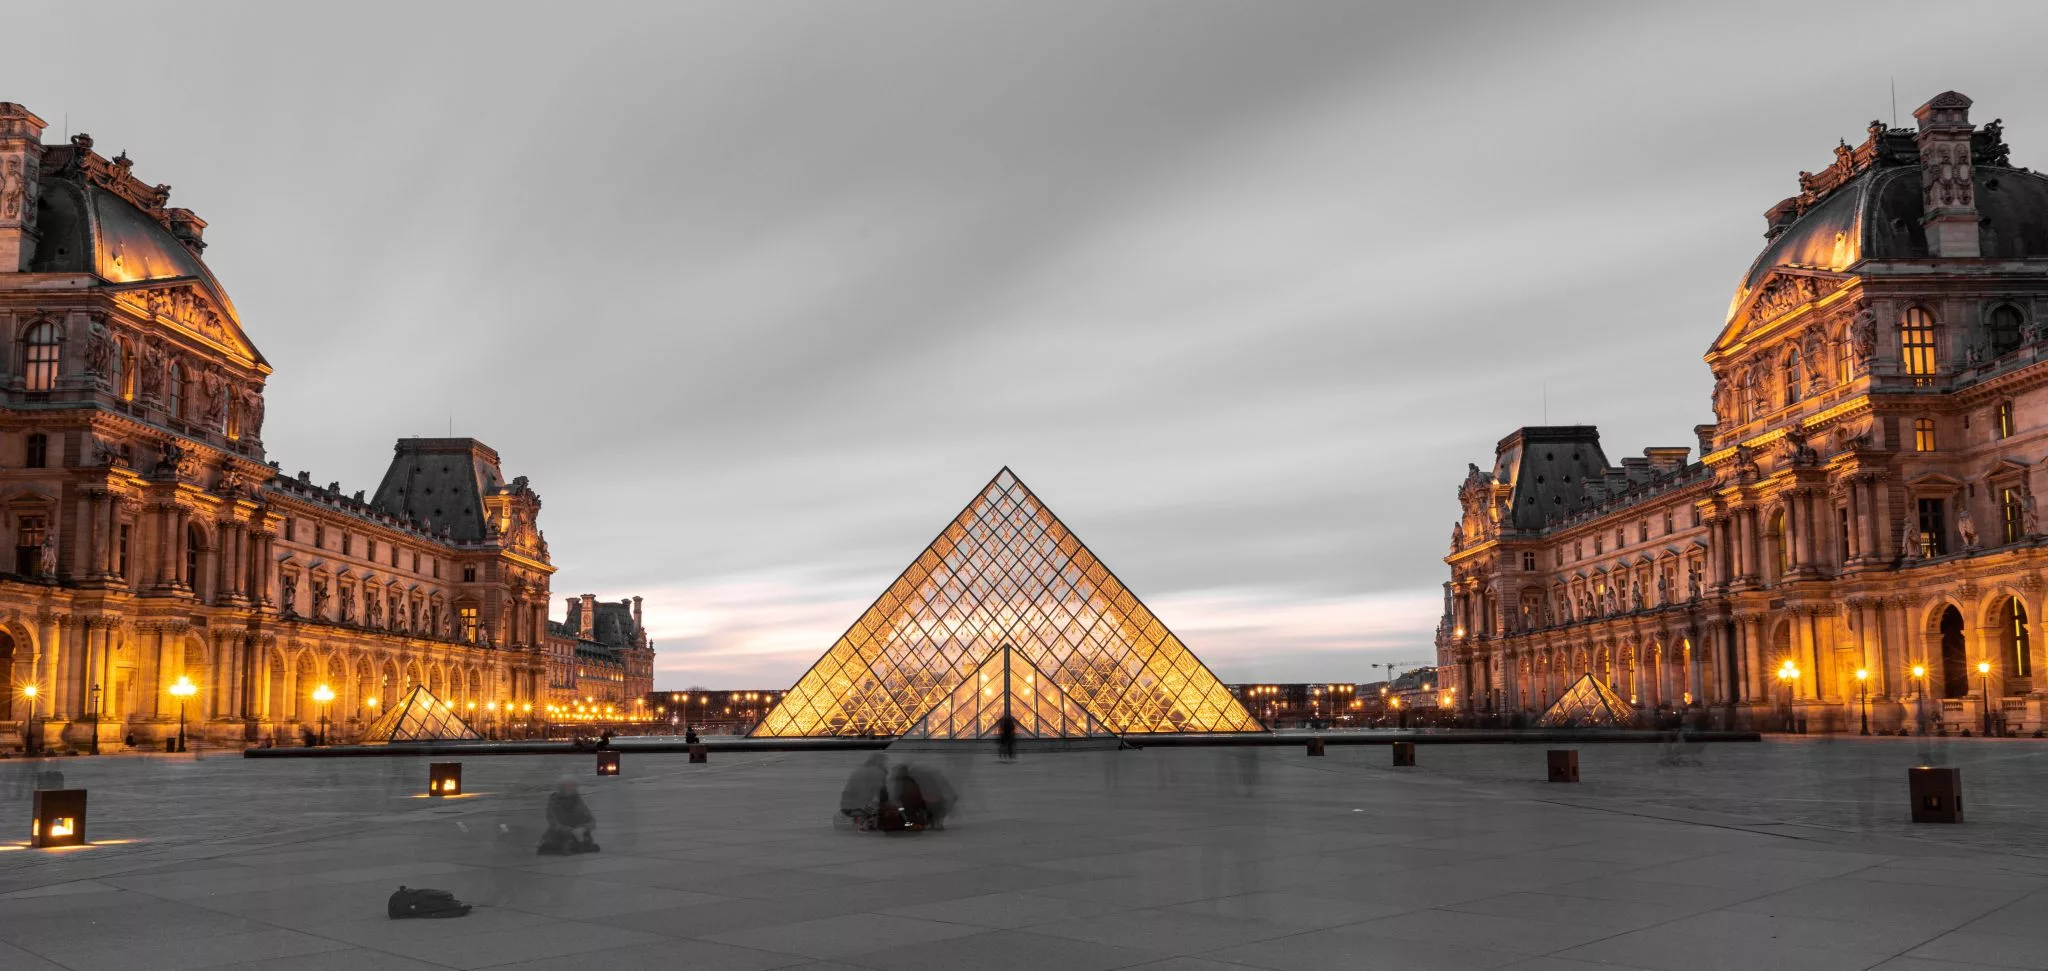 Louvre Museum France.webp?h=1400&q=83